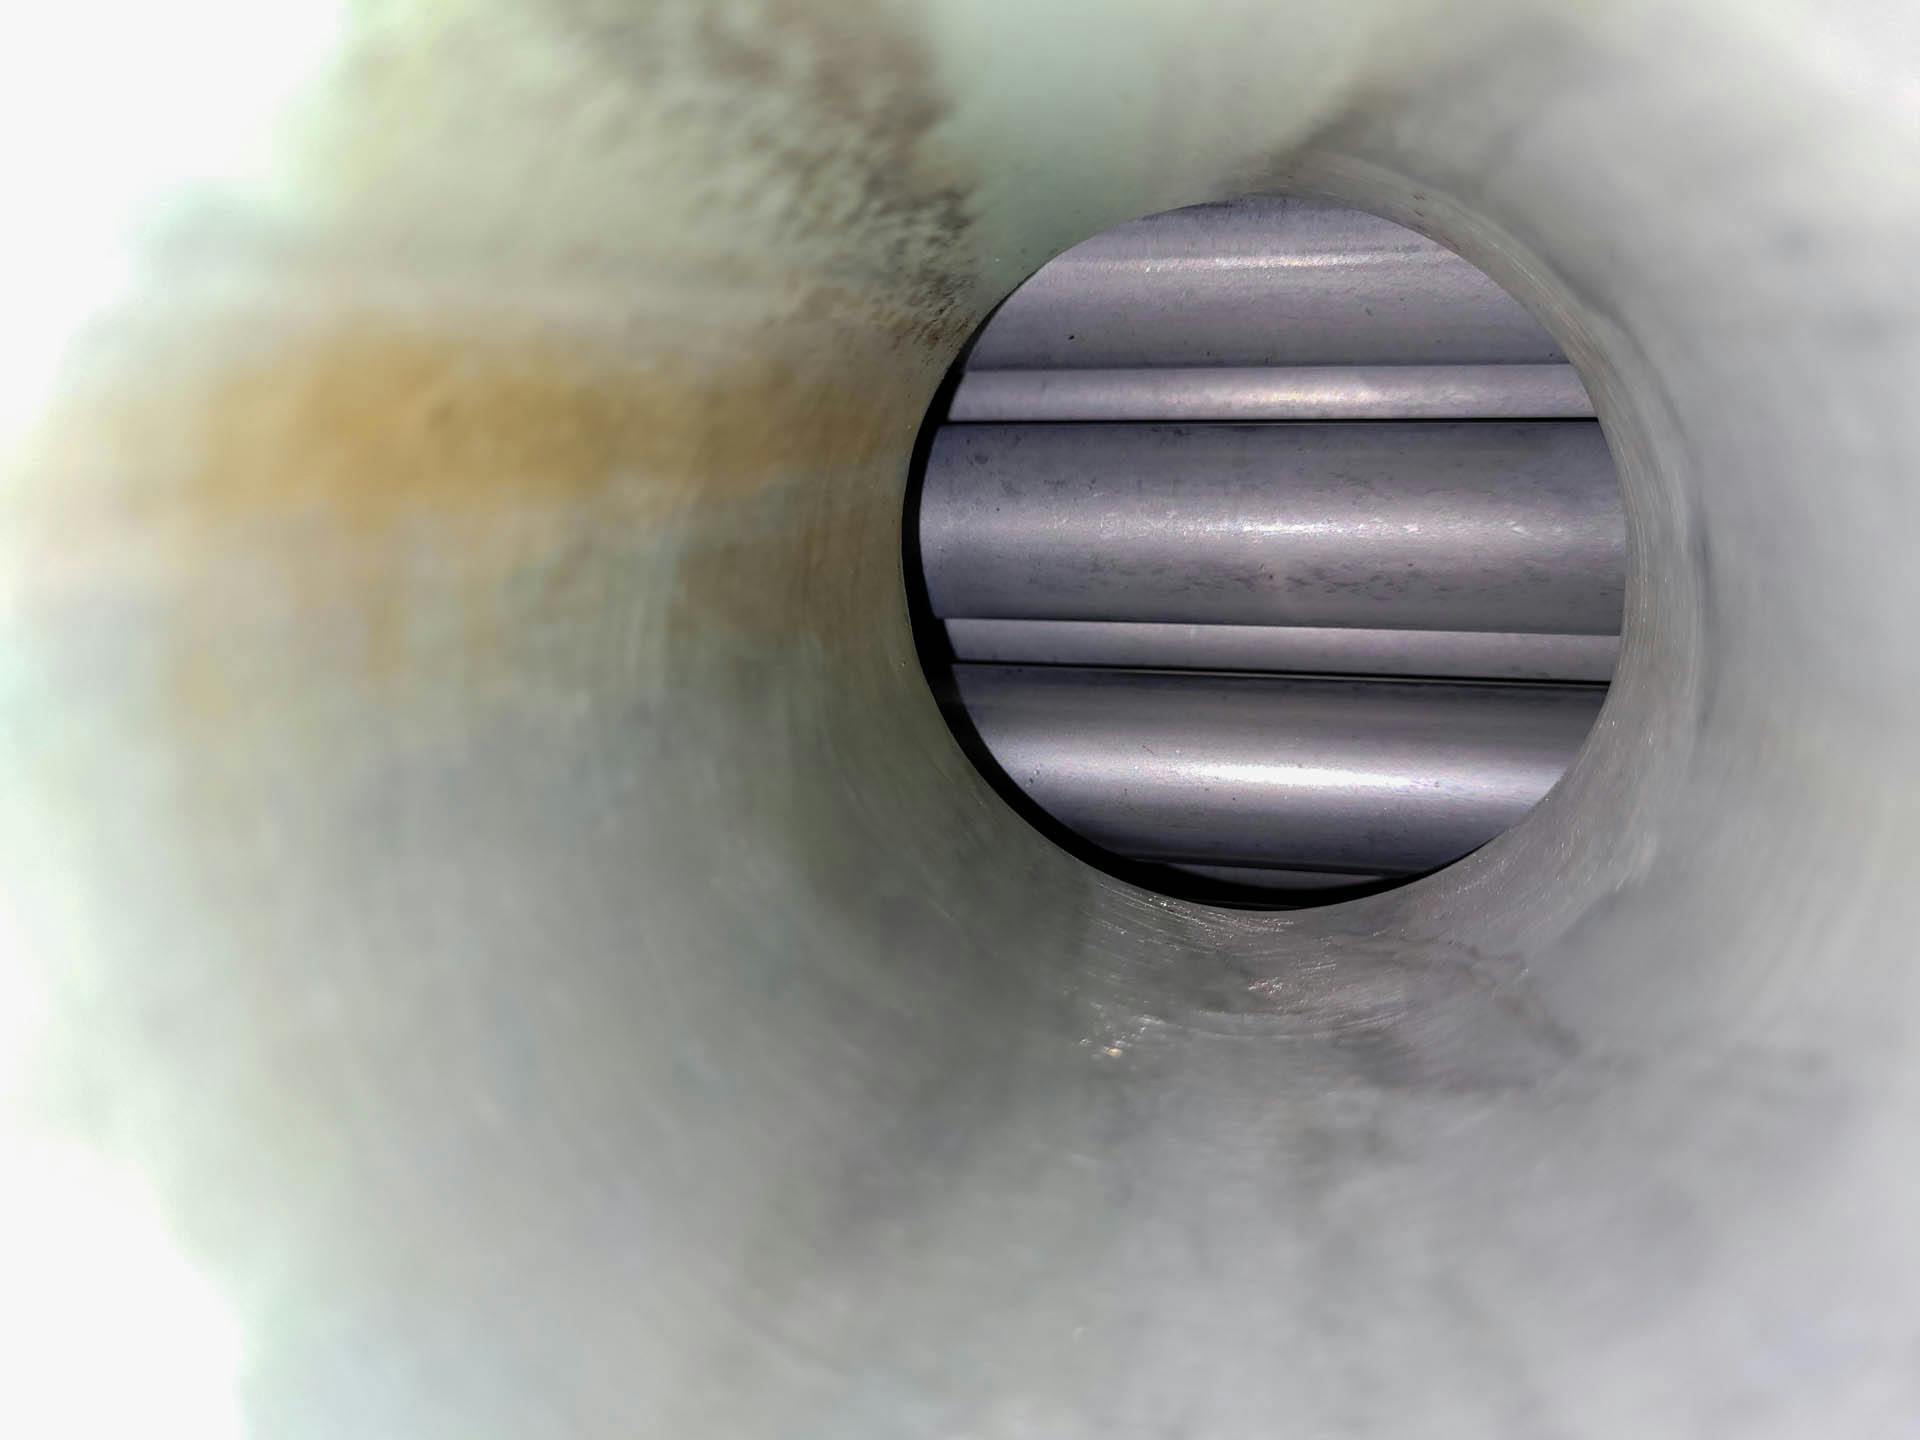 Kuehni condenser - Échangeur de température tubulaire - image 4